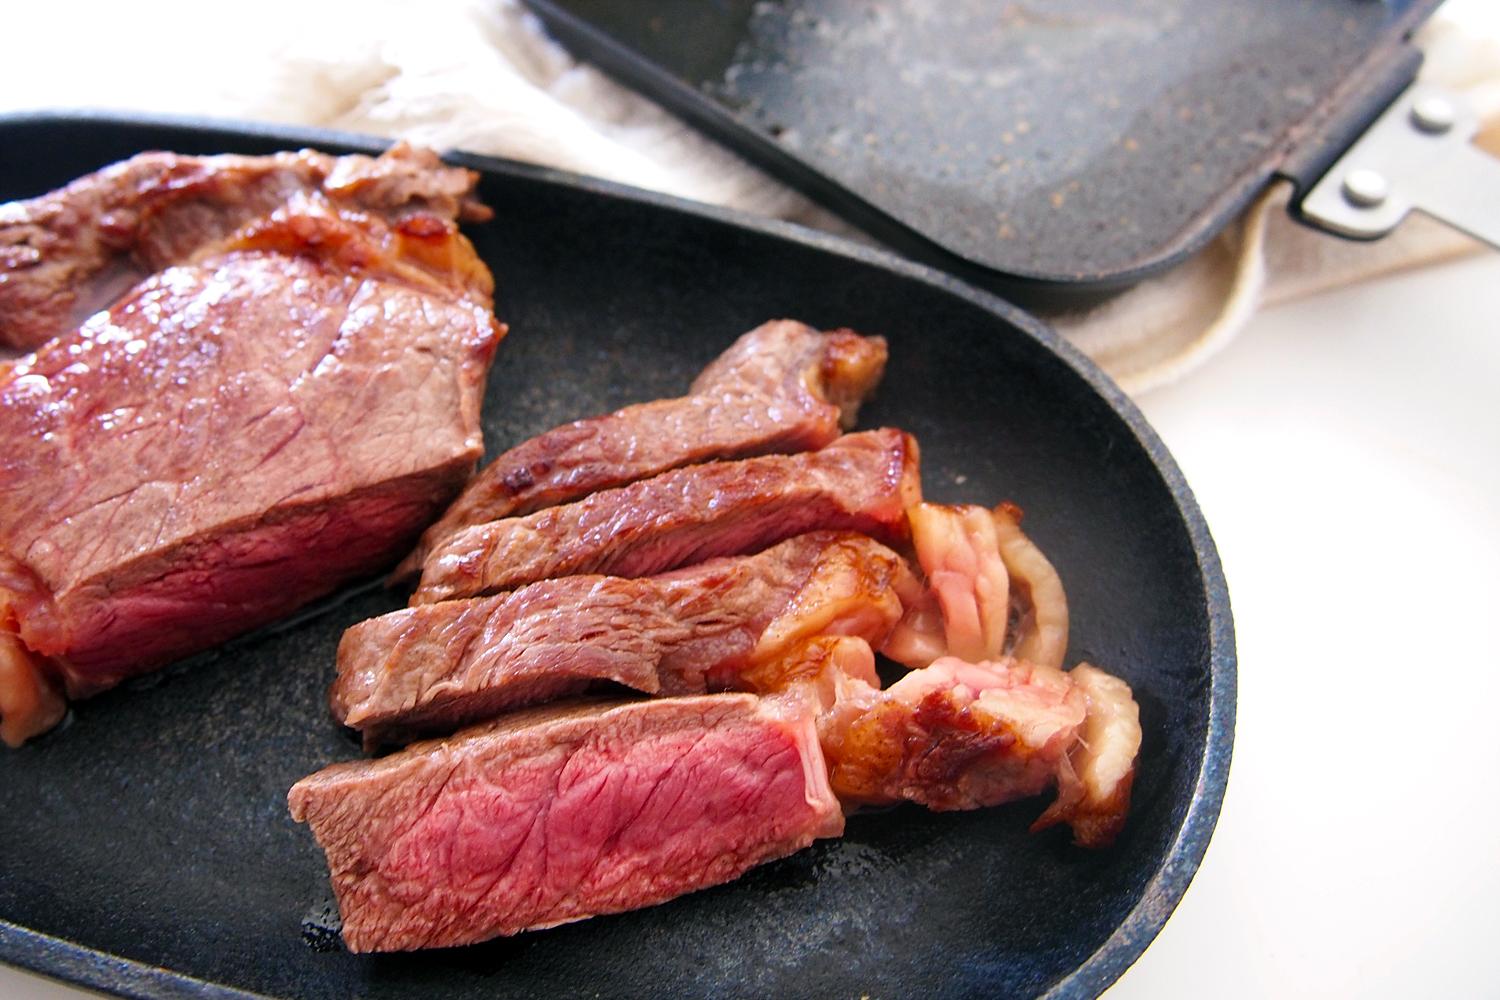 カリカリ ジューシー食感 ホットサンドメーカーでつくる肉料理レシピ ミートガイ